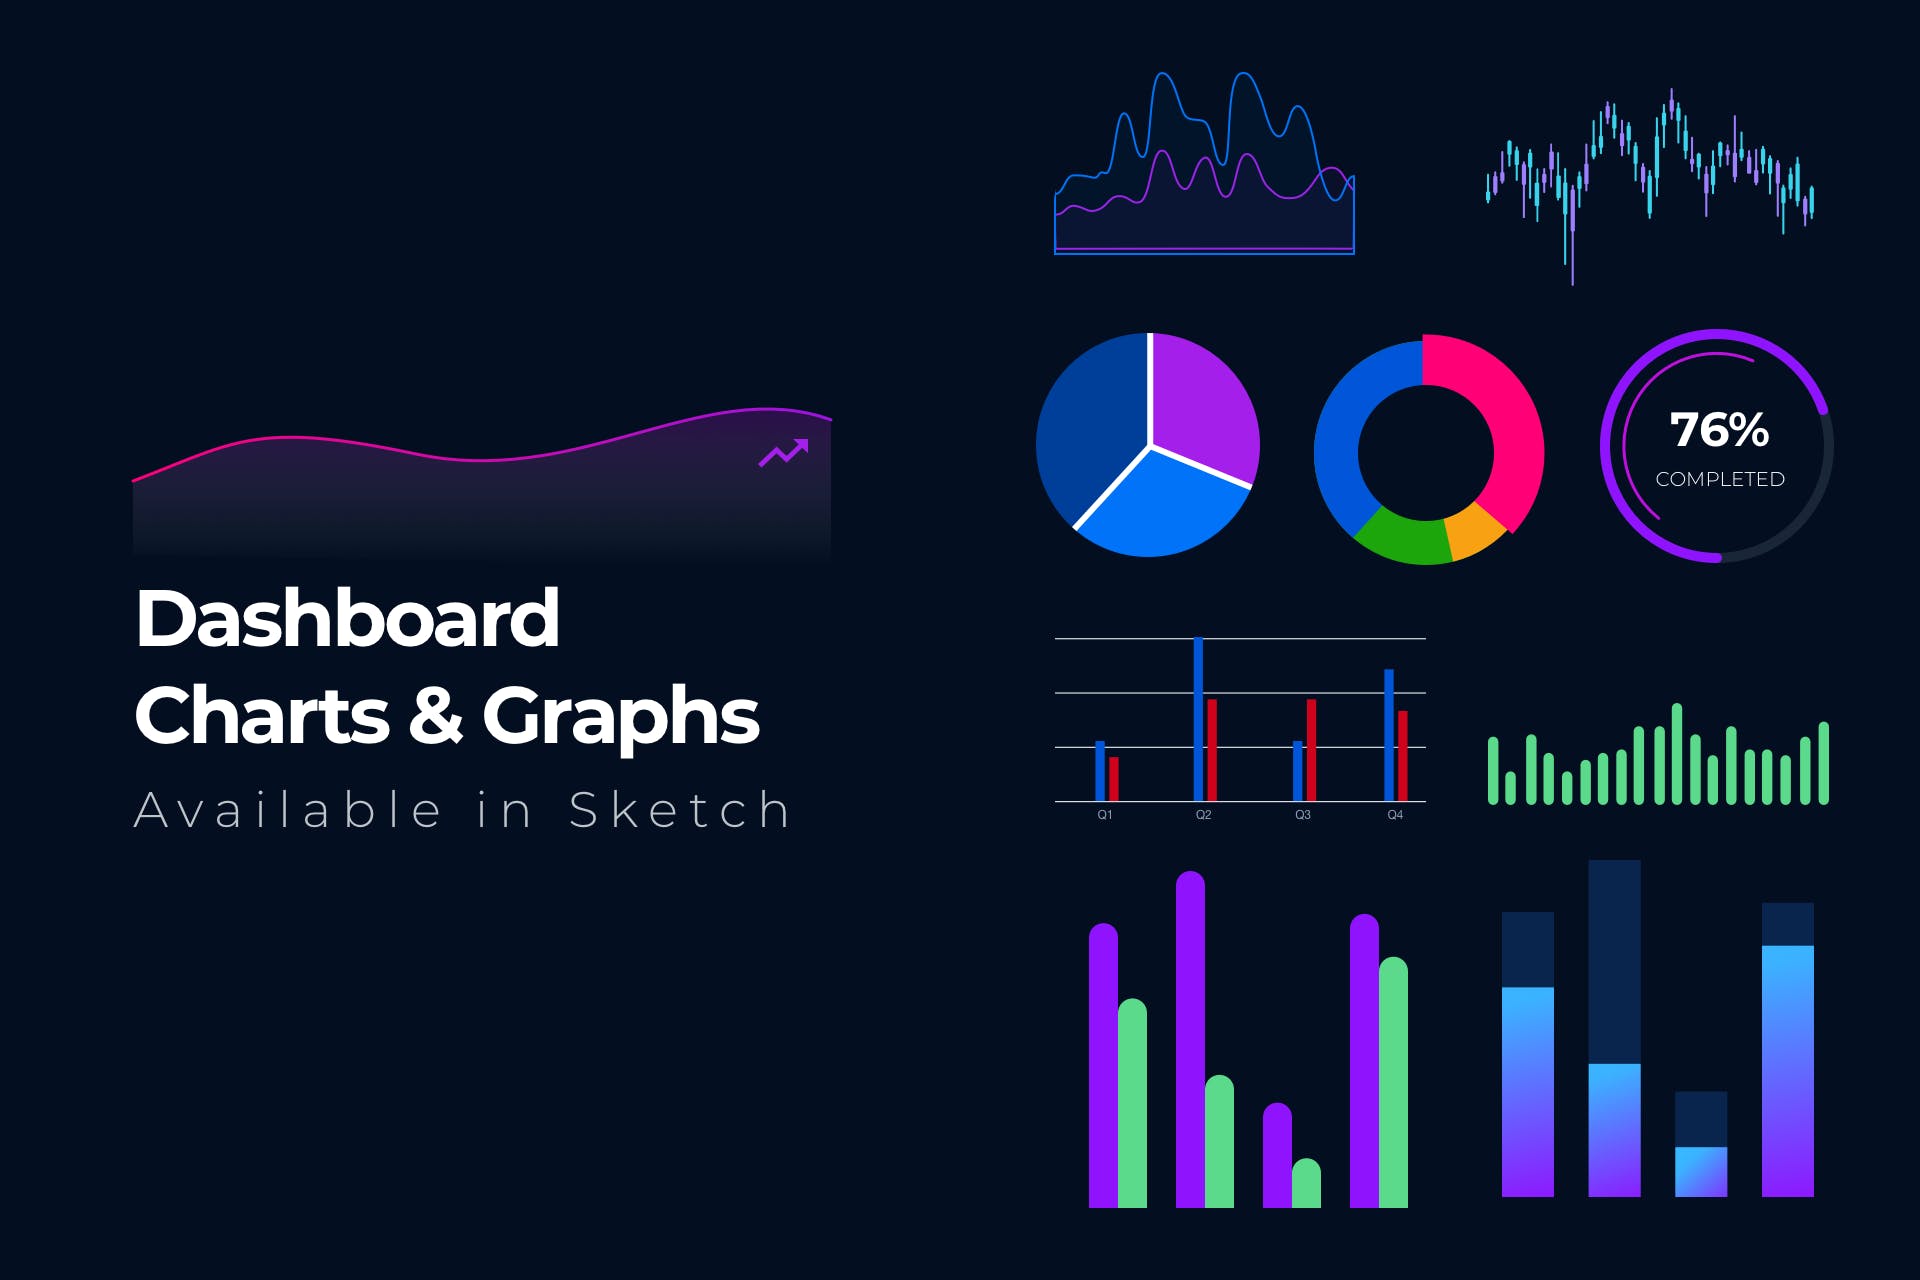 15+网站后台管理数据统计图表设计素材 15+ Dashboard Charts & Graphs Items插图